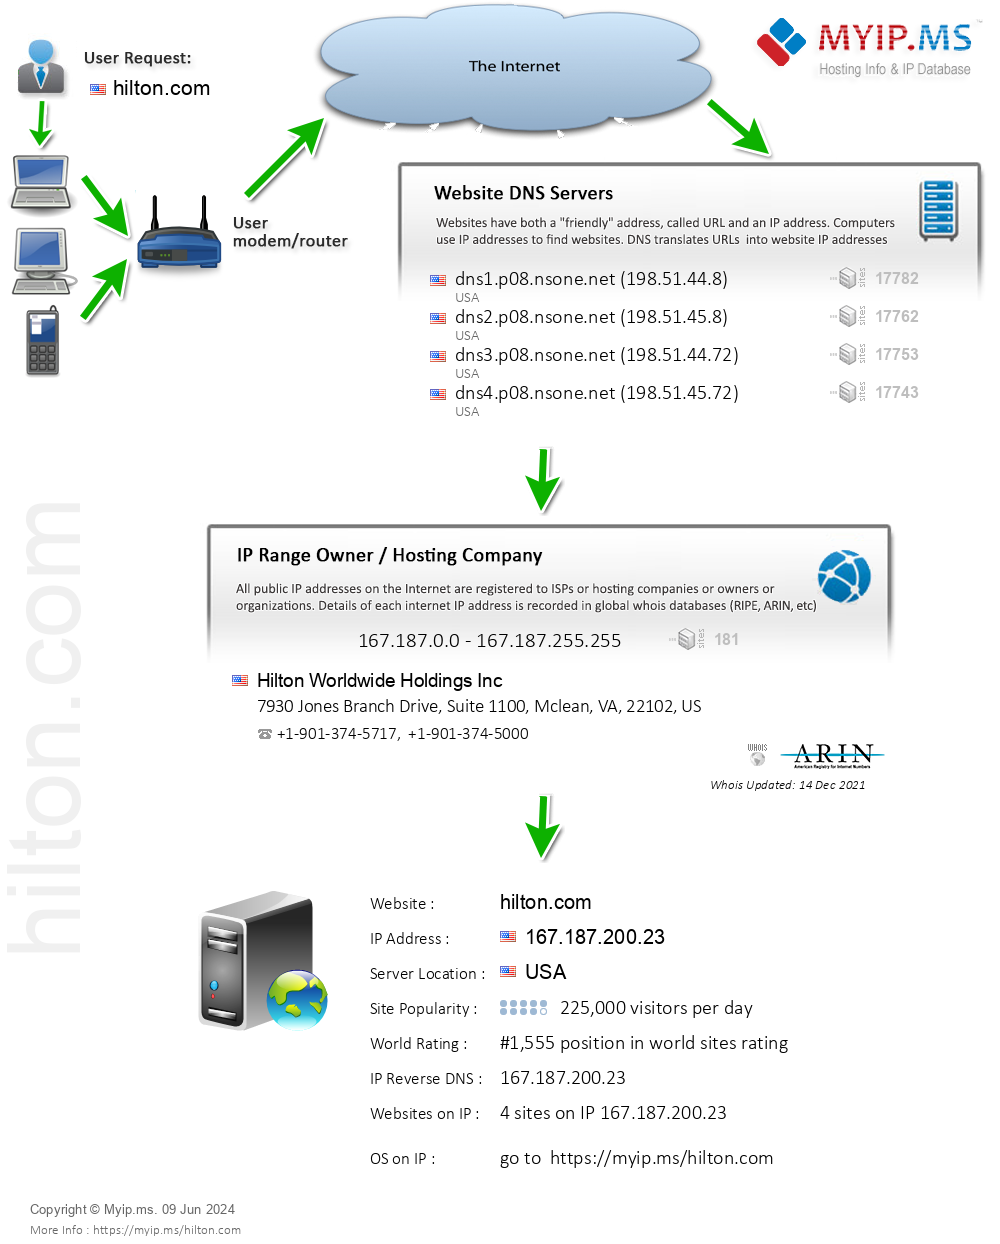 Hilton.com - Website Hosting Visual IP Diagram